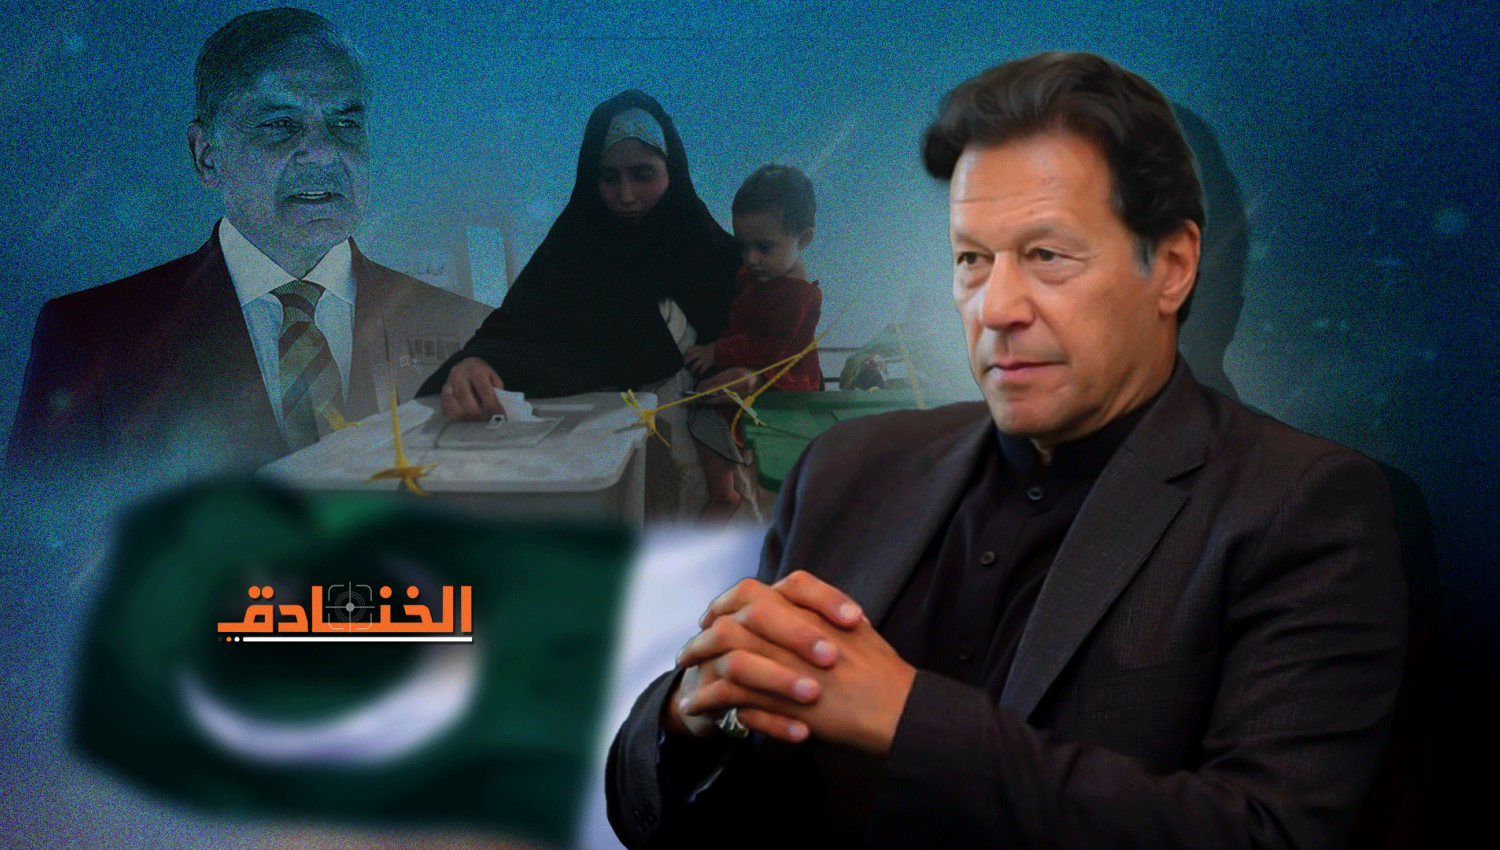 محاولة اغتيال عمران خان: باكستان في بوتقة الاضطرابات 